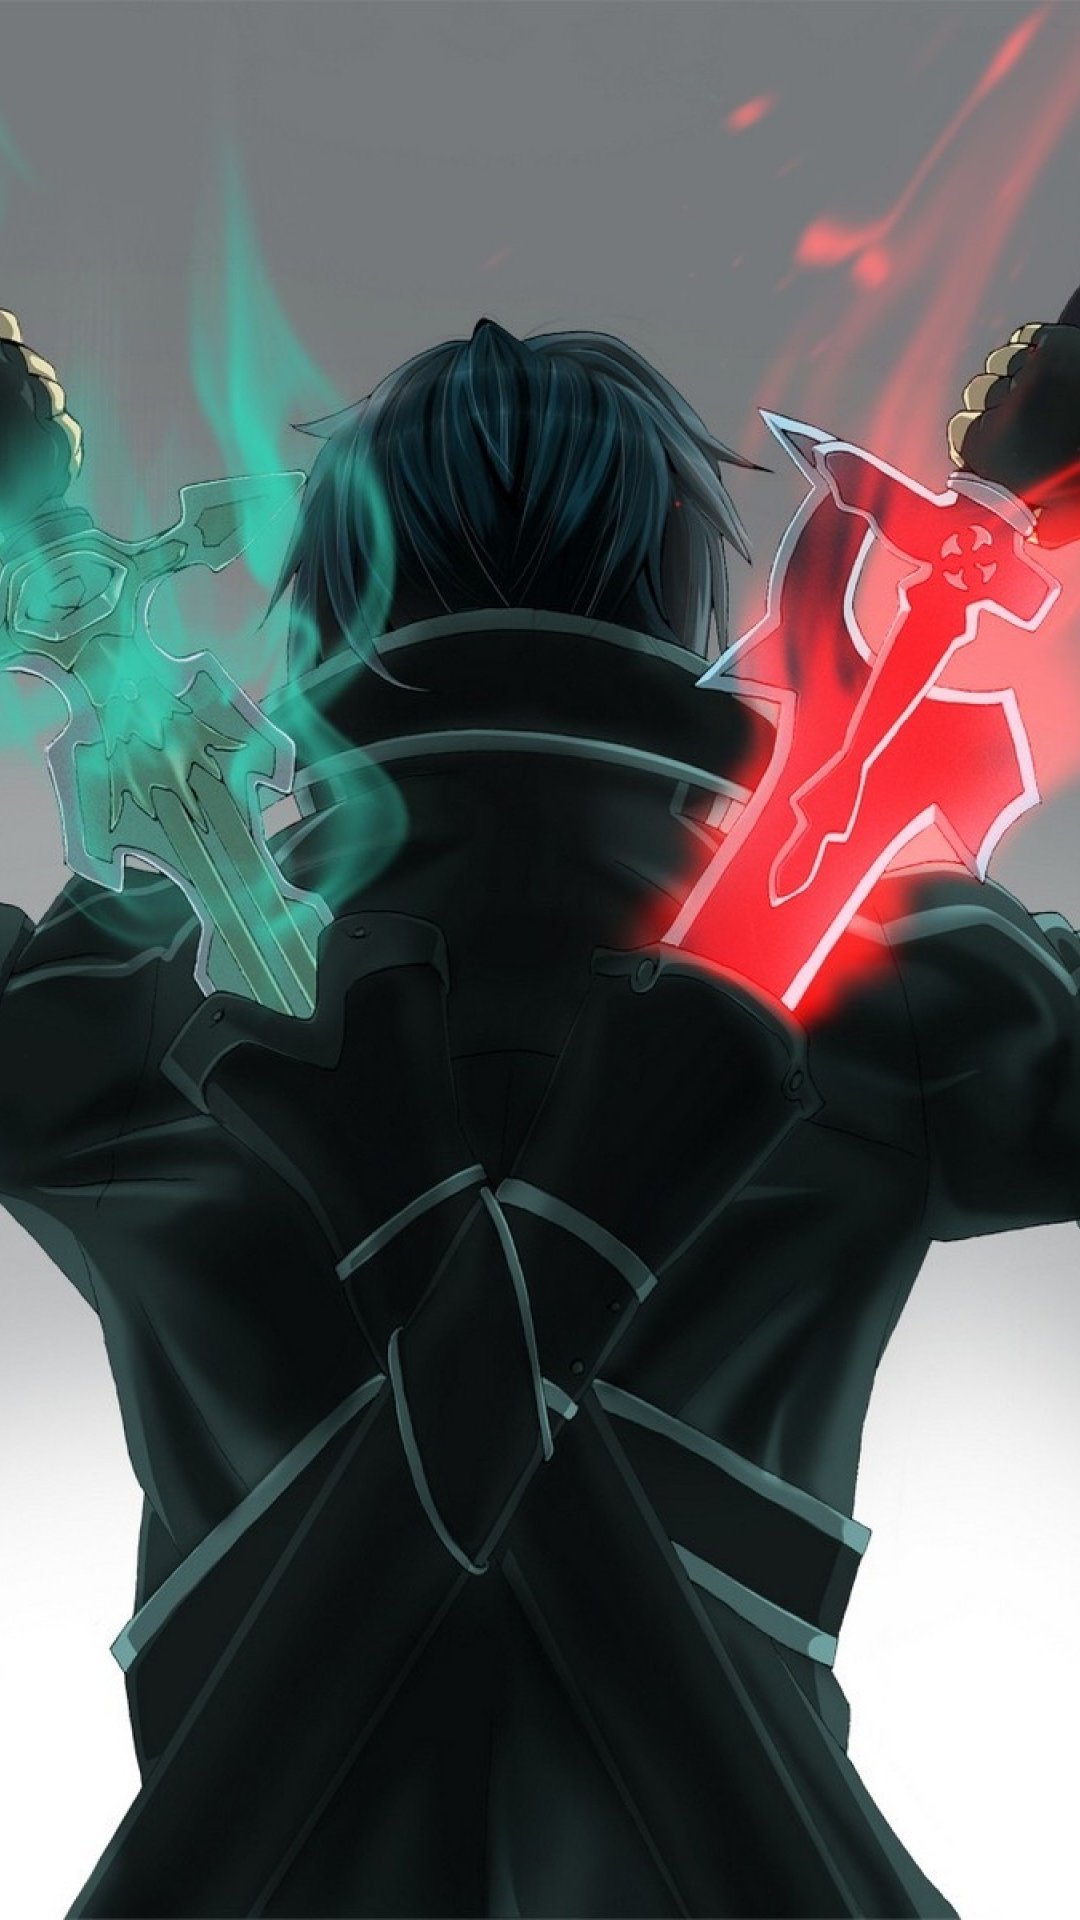 Kirito Sword Art Online Anime Wallpaper